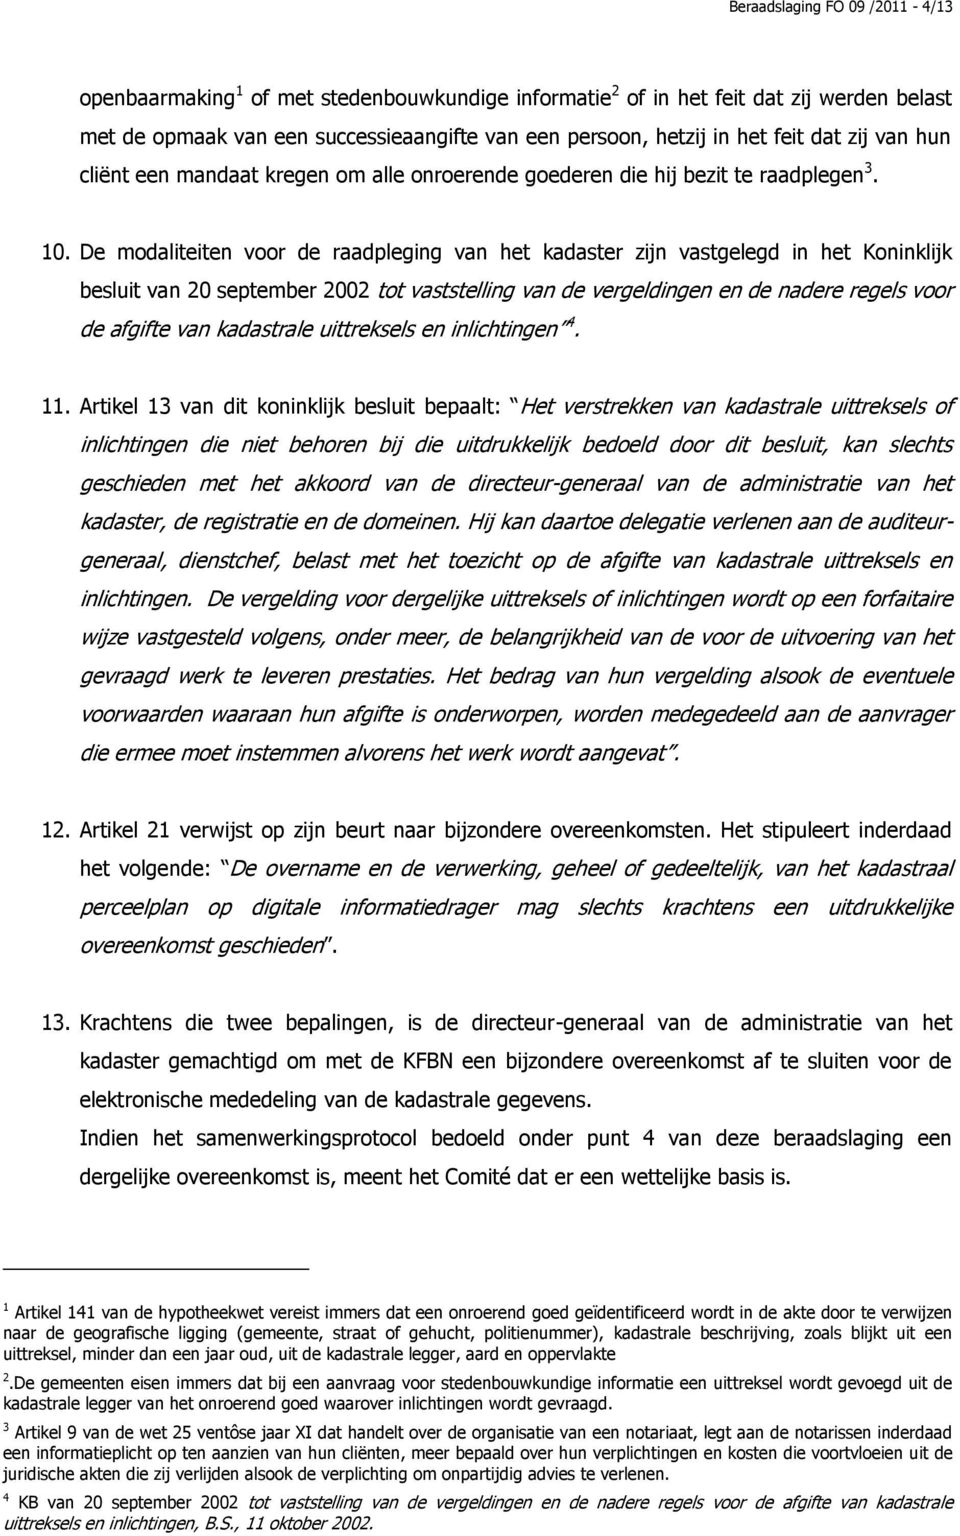 De modaliteiten voor de raadpleging van het kadaster zijn vastgelegd in het Koninklijk besluit van 20 september 2002 tot vaststelling van de vergeldingen en de nadere regels voor de afgifte van